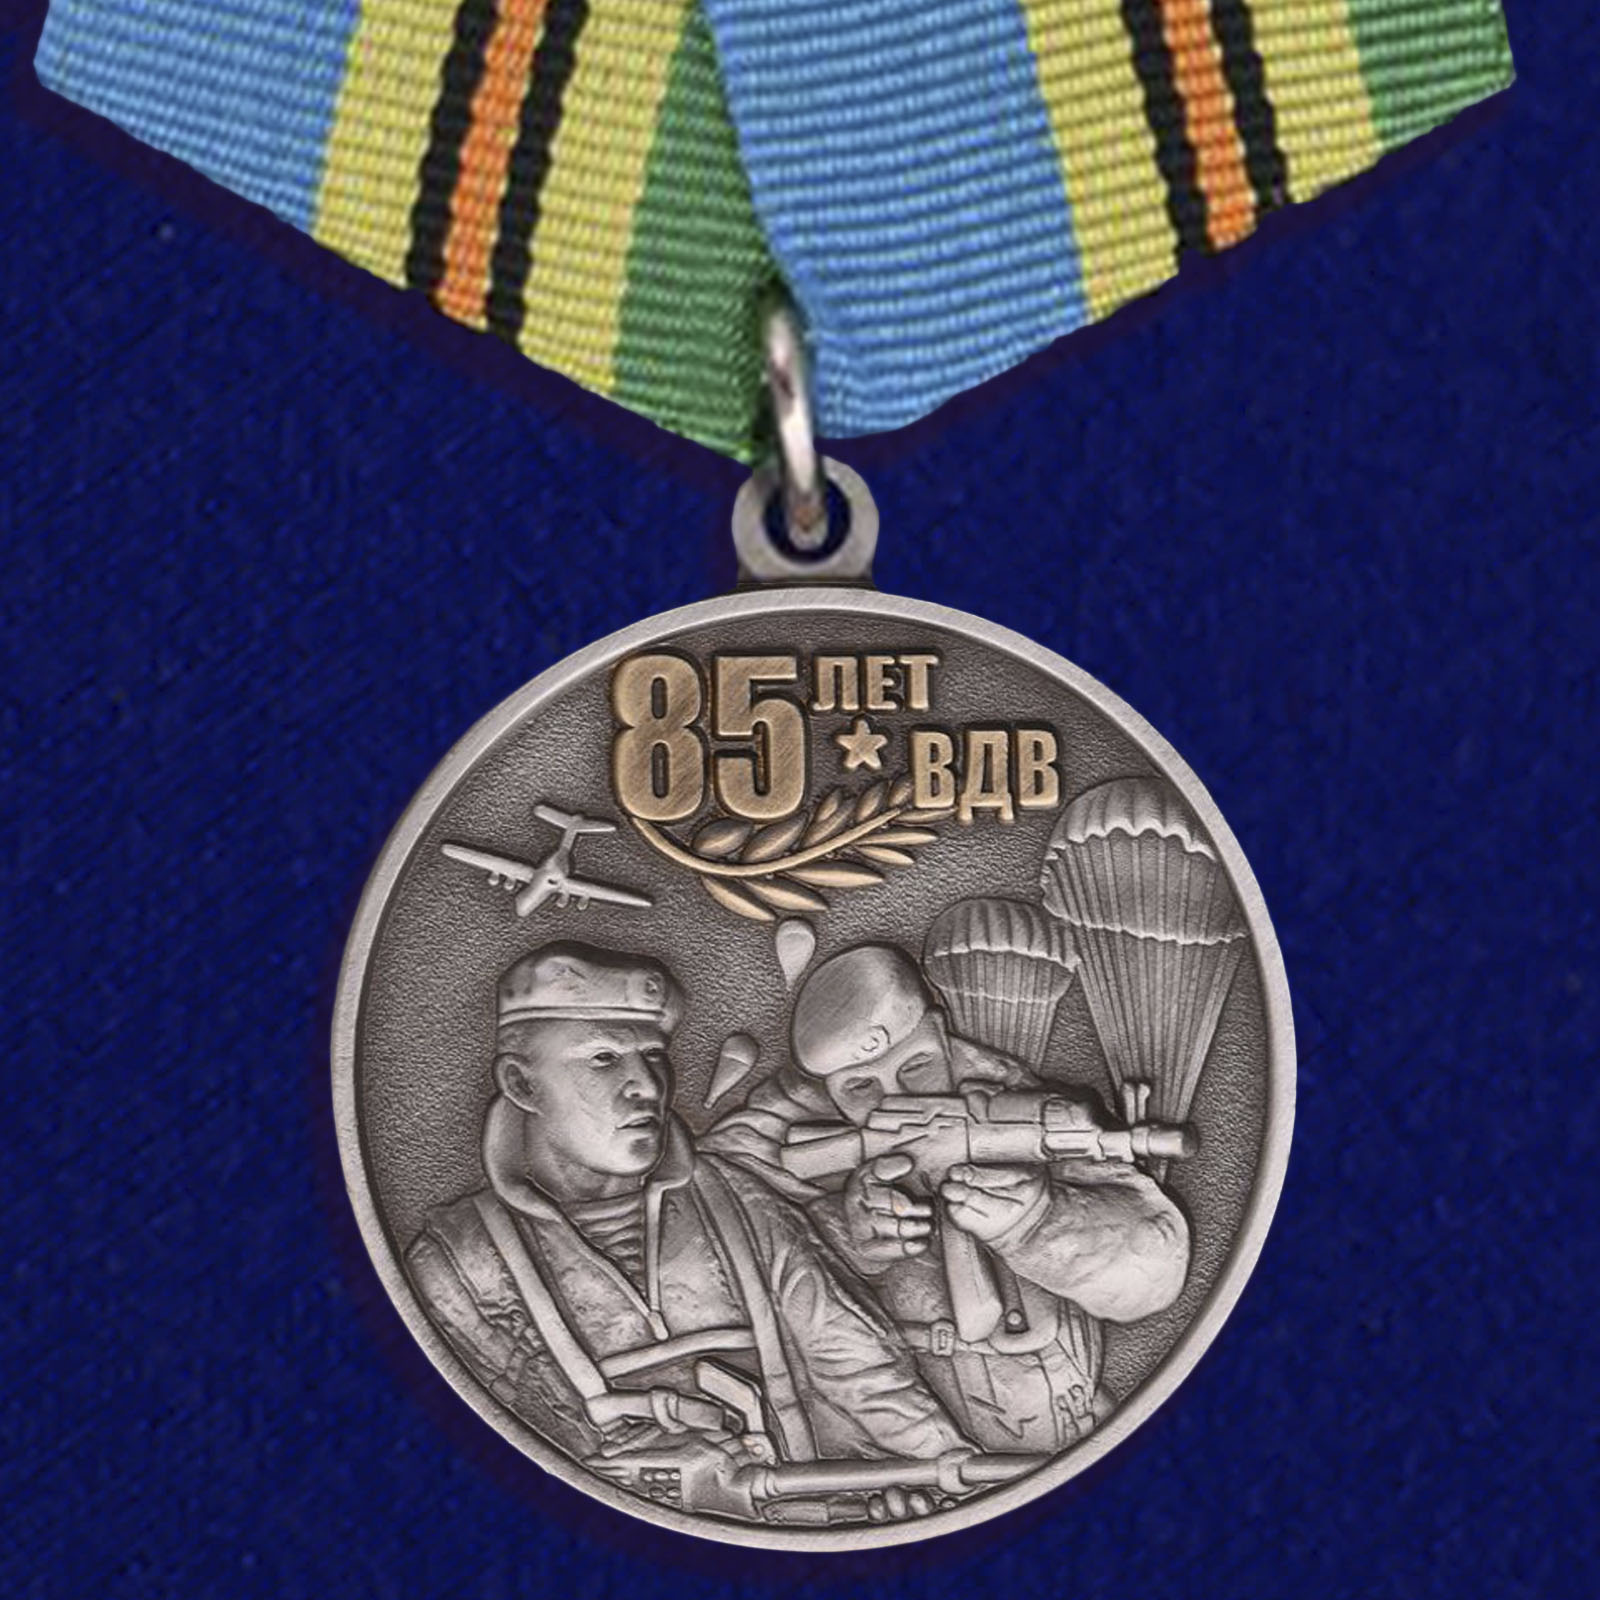 Купить медаль Воздушно-десантных войск на подставке онлайн выгодно